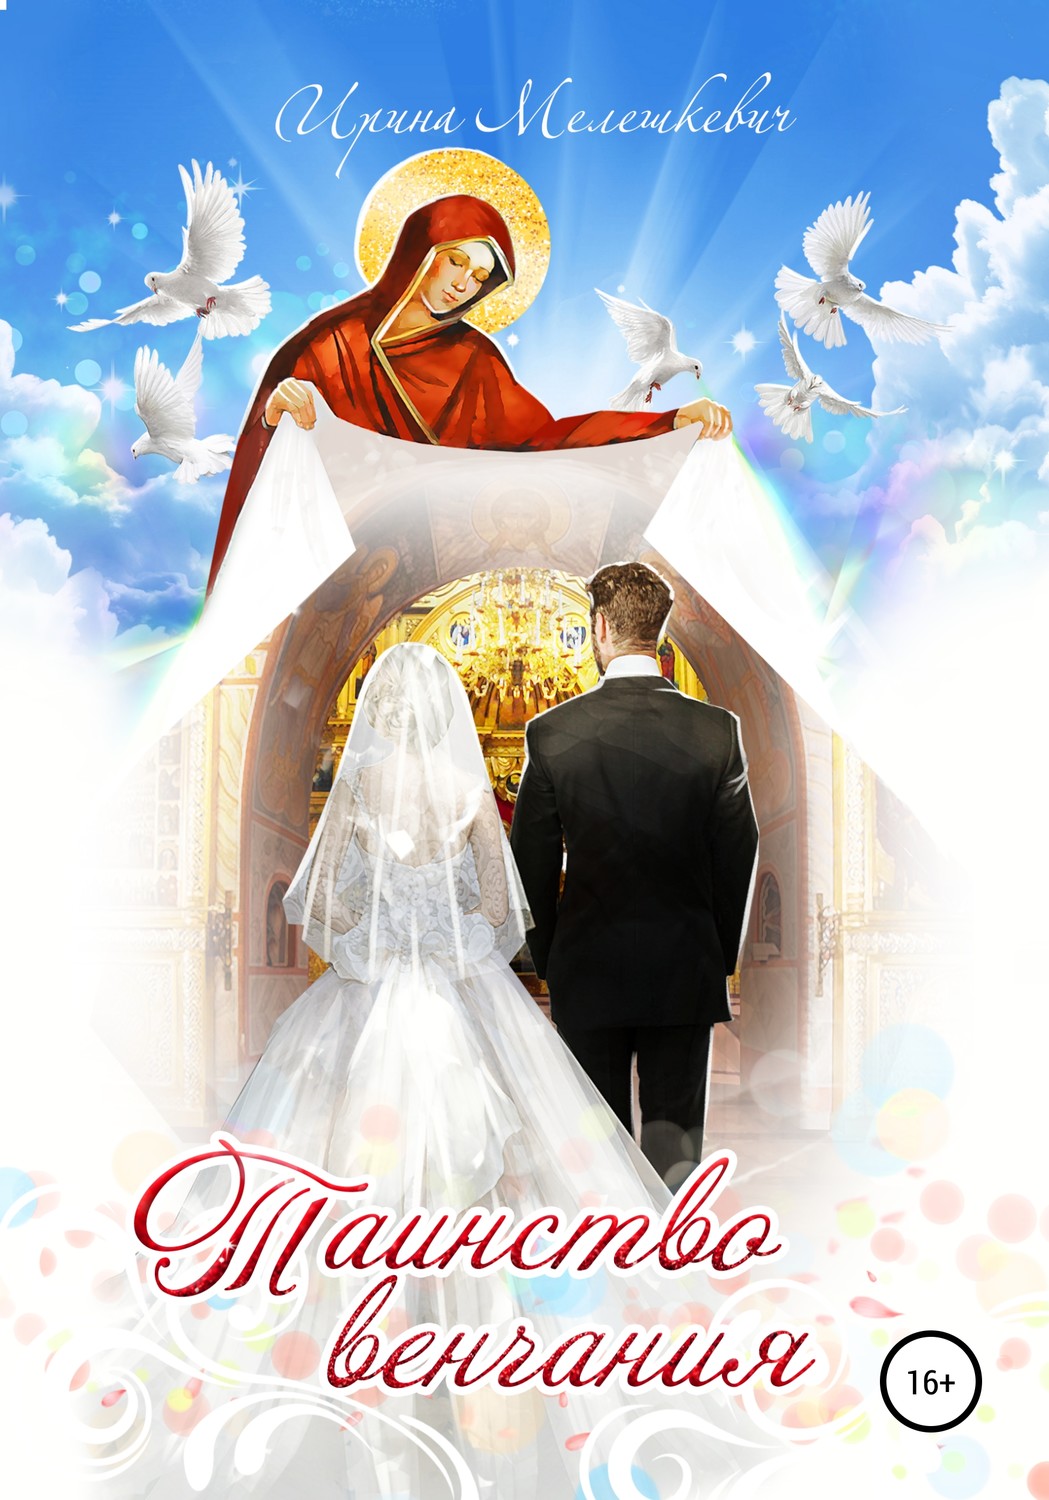 Поздравления С 14 Летием Венчания В Церкви